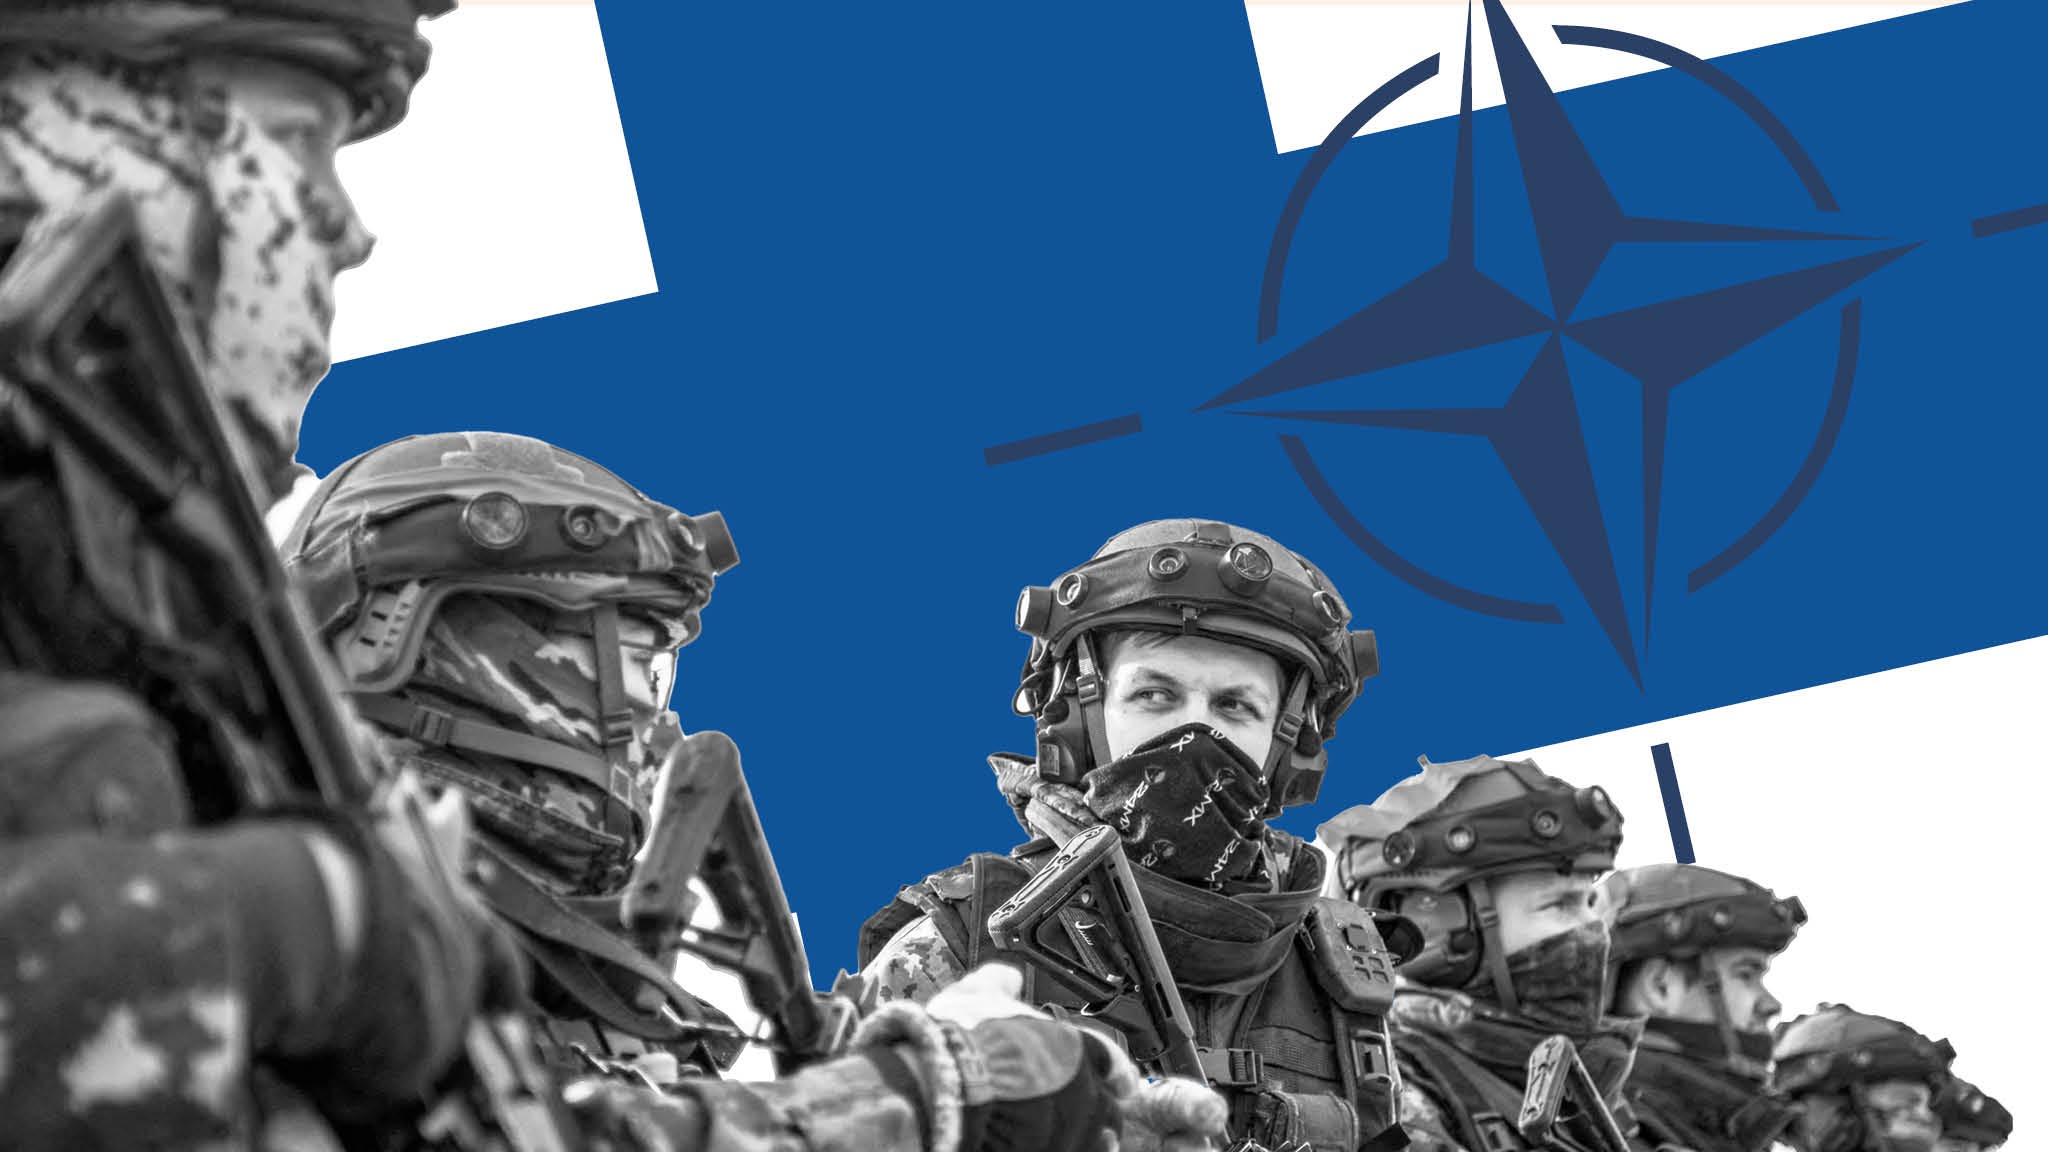 السويد وفنلندا تتوجهان للانضمام الى الناتو بسرعة قصوى